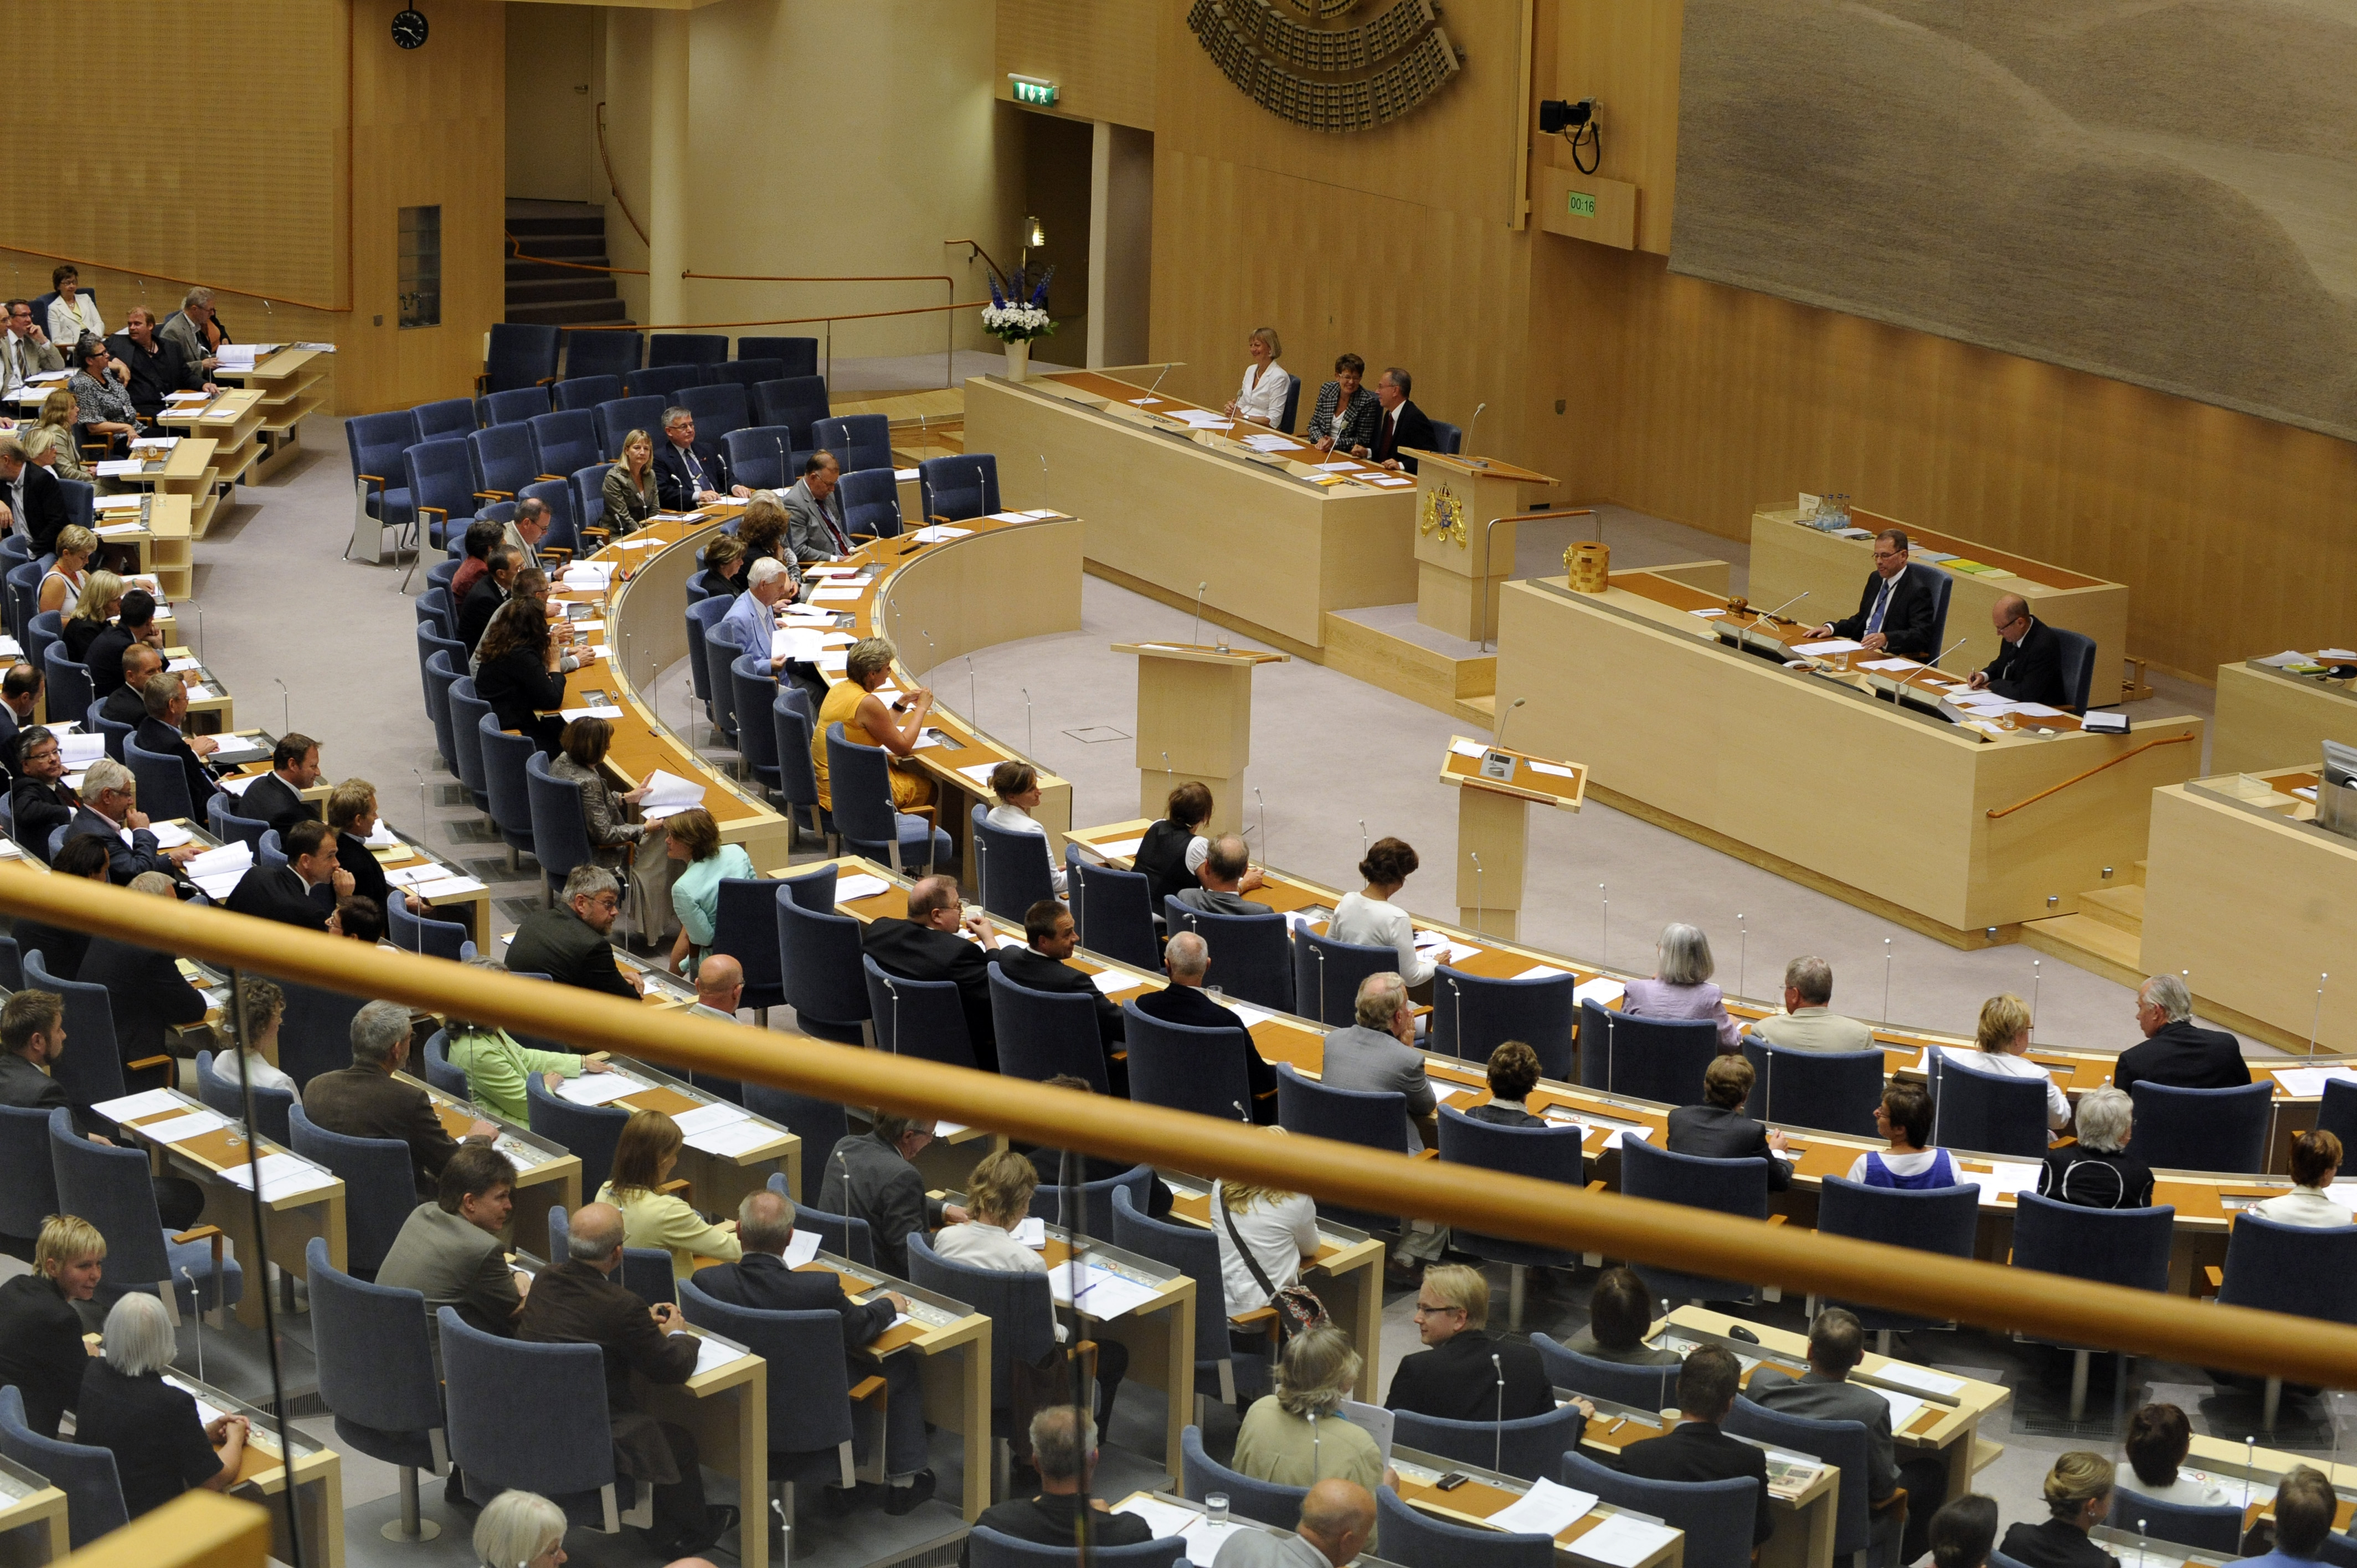 Göran Hägglund, Riksdagsvalet 2010, Politisk vilde, Kristdemokraterna, Göran Thingwall, Fredrik Reinfeldt, Moderaterna, Alliansen